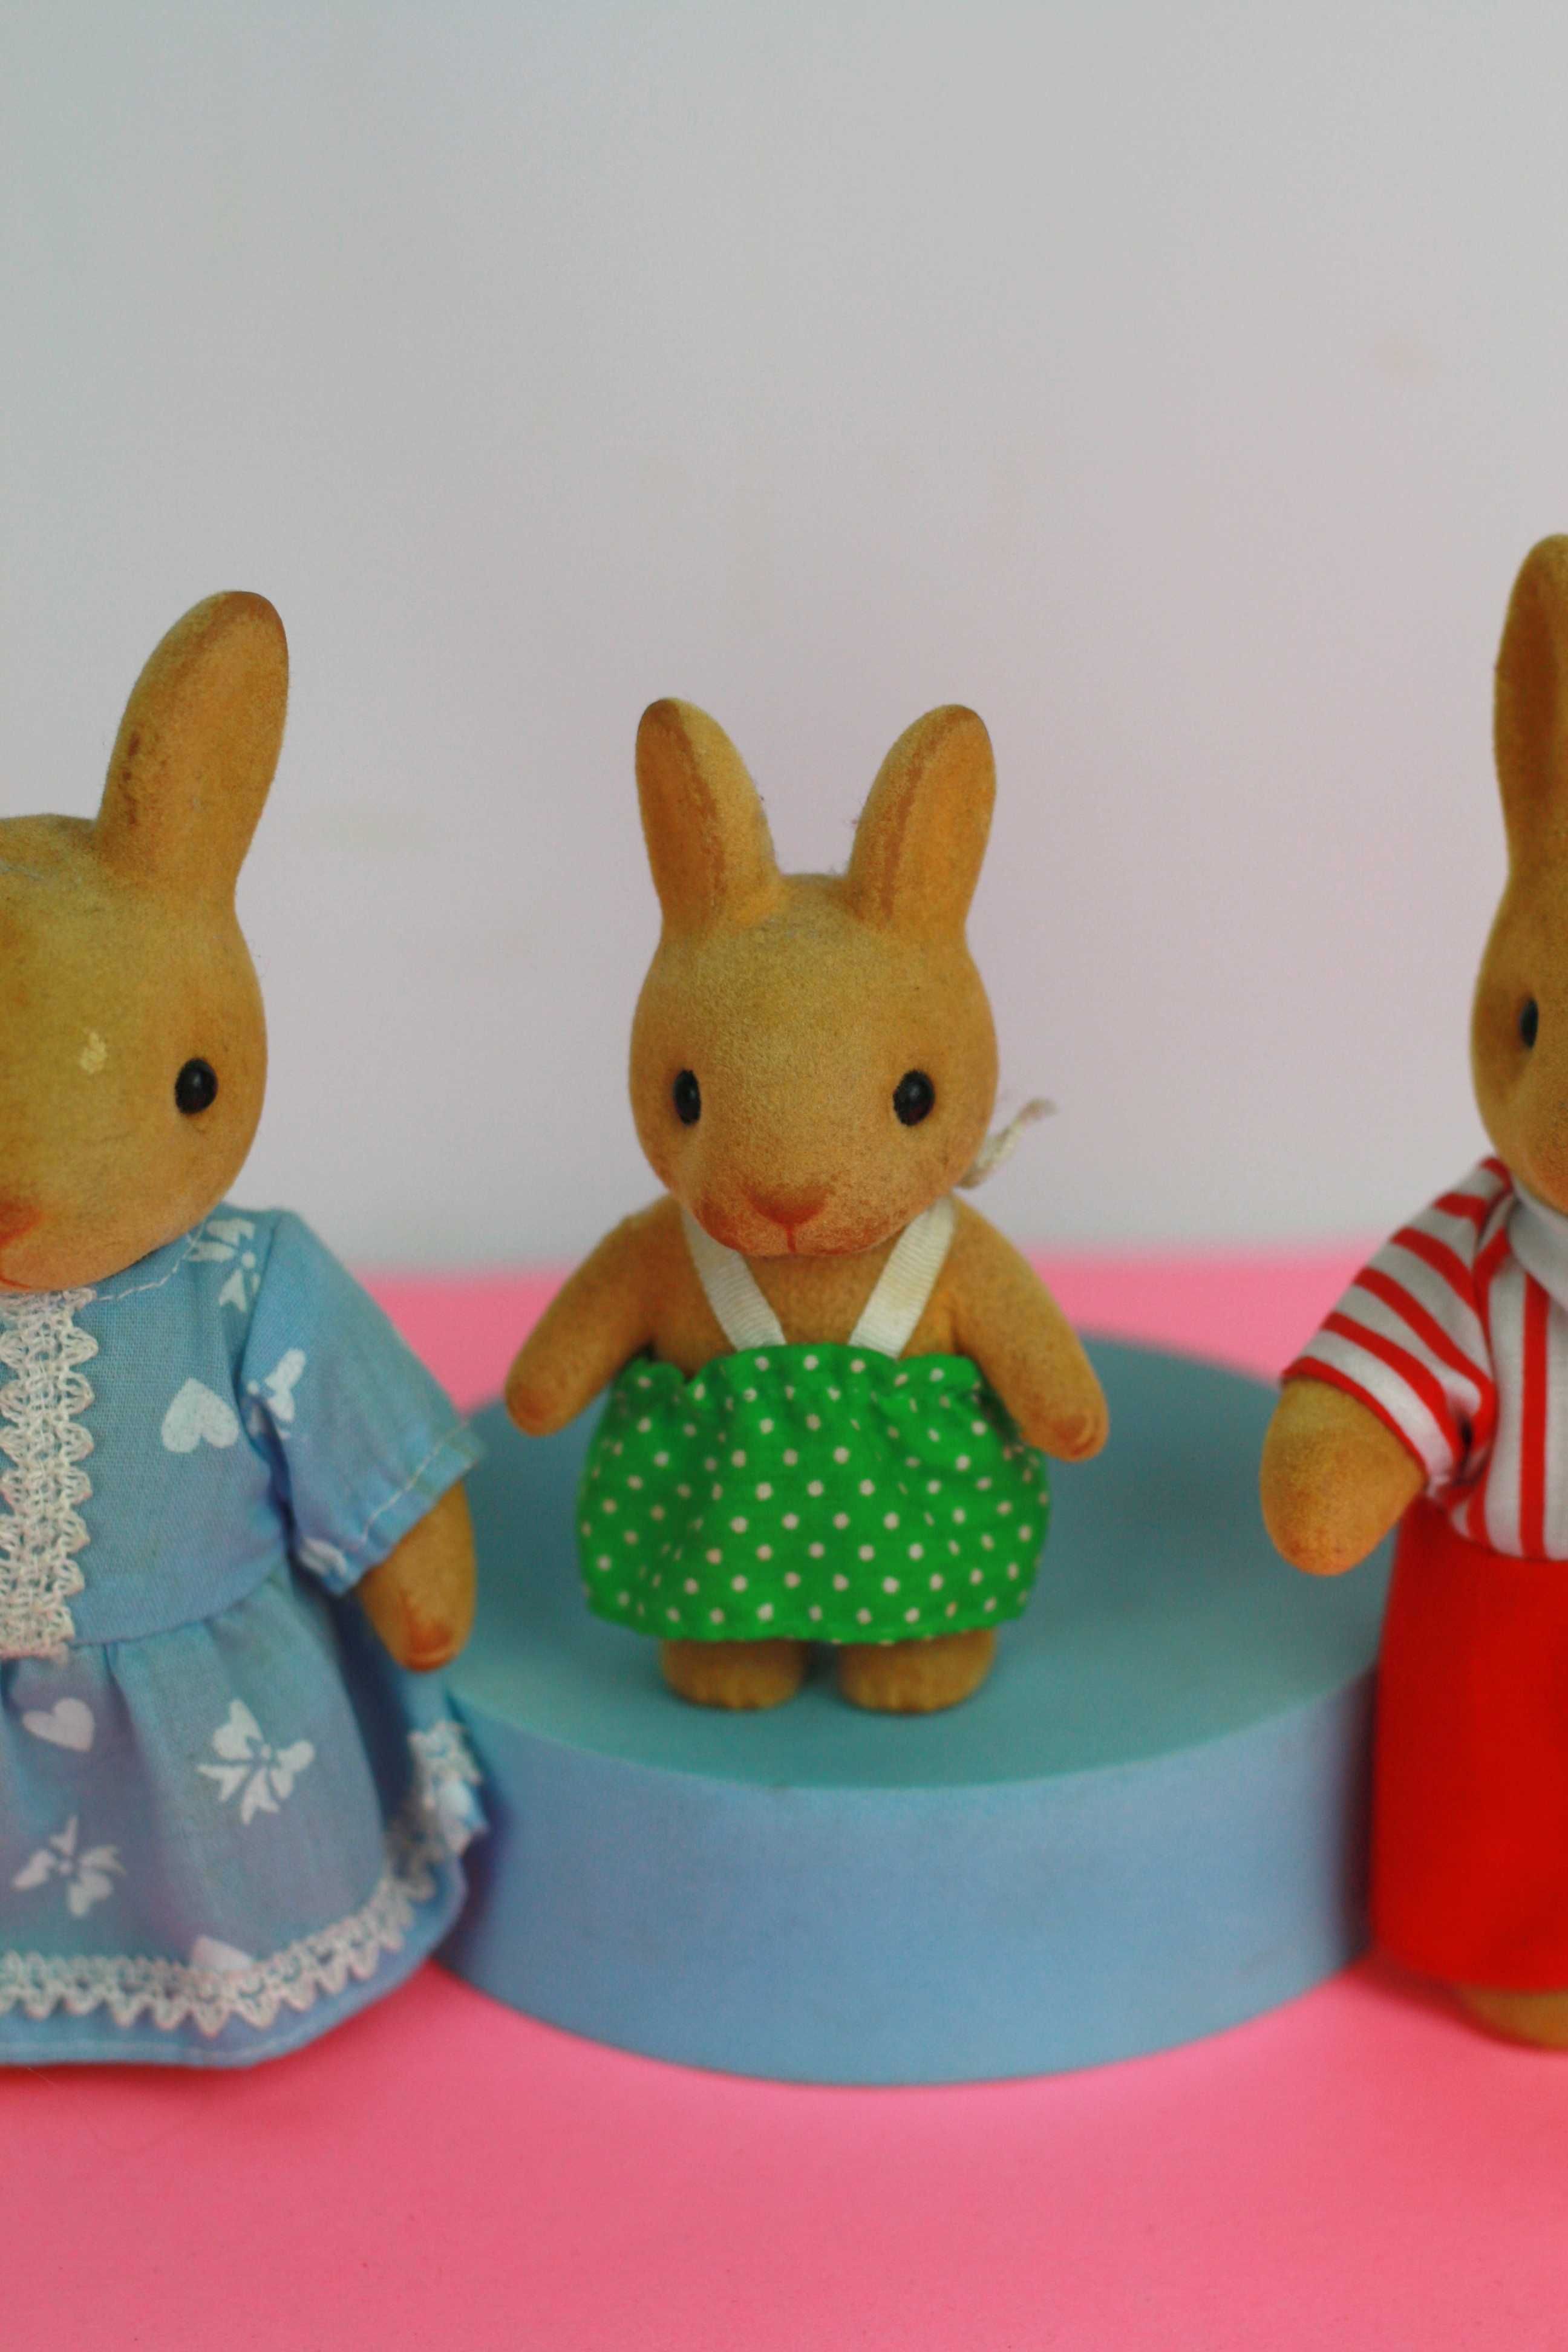 Trzy króliki figurki Sylvanian Forest Families